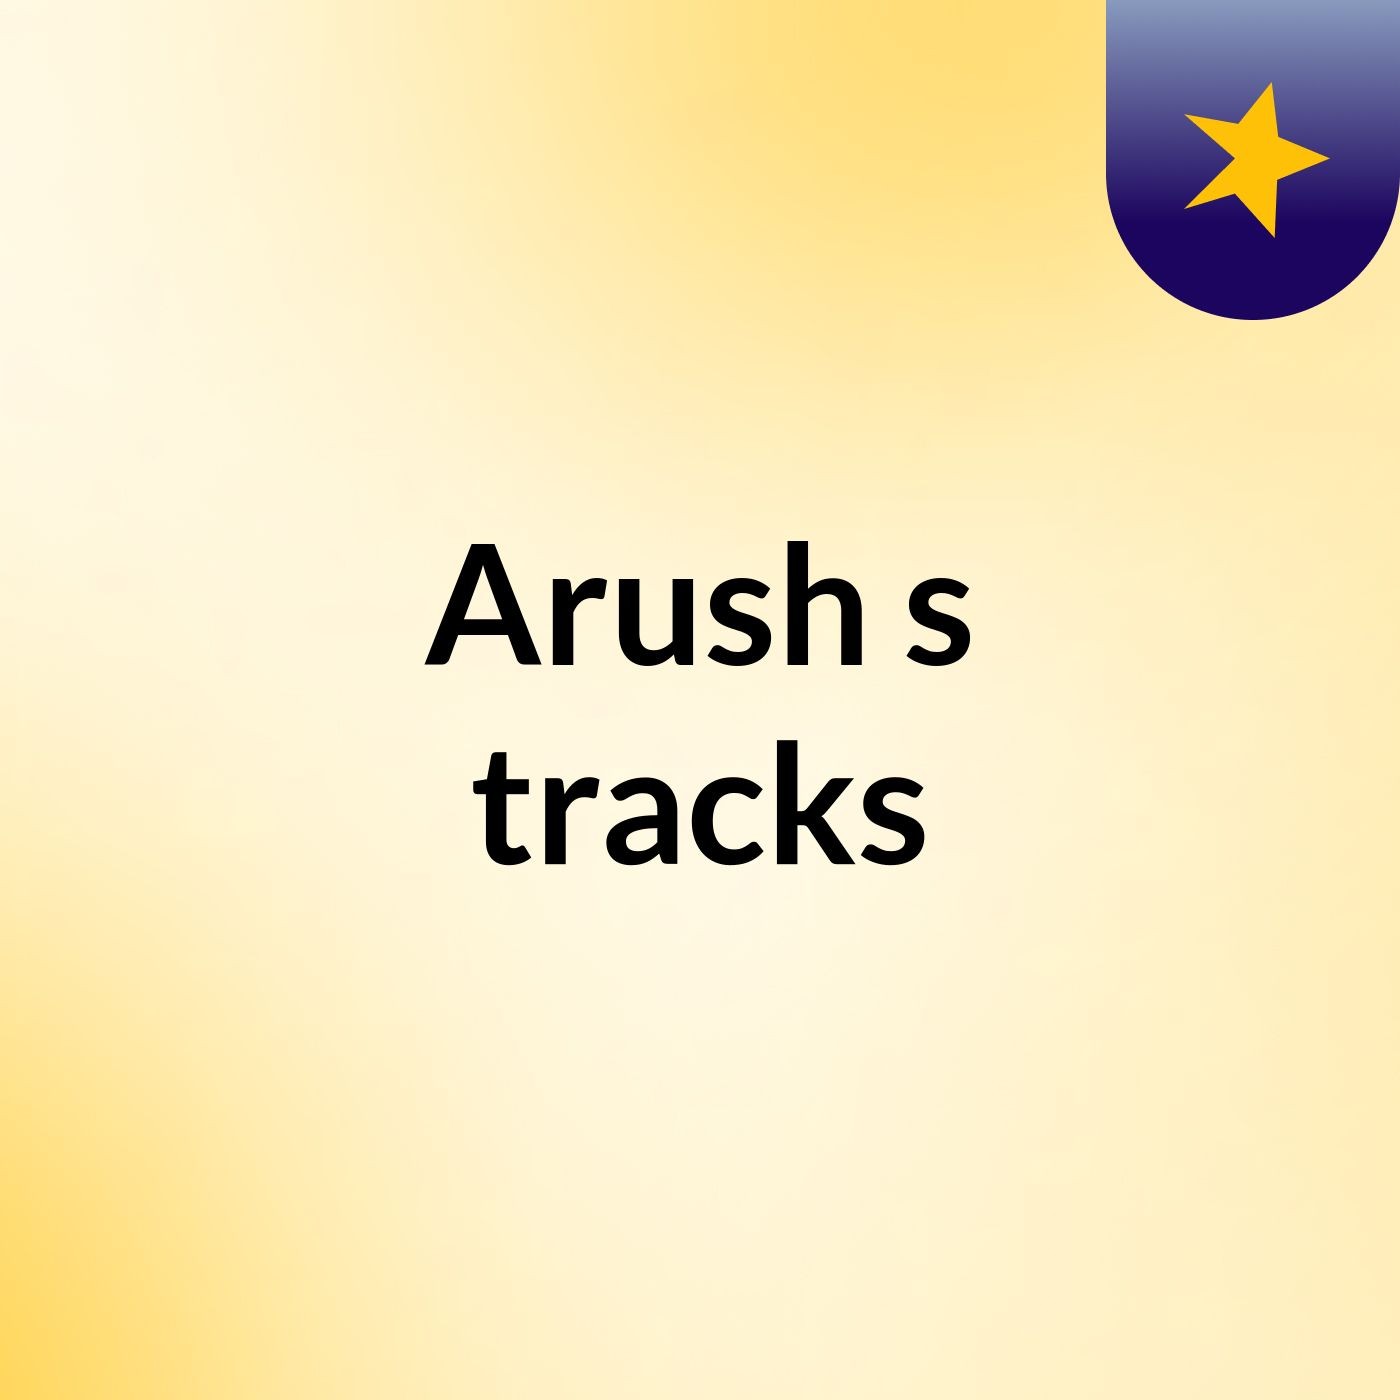 Arush's tracks